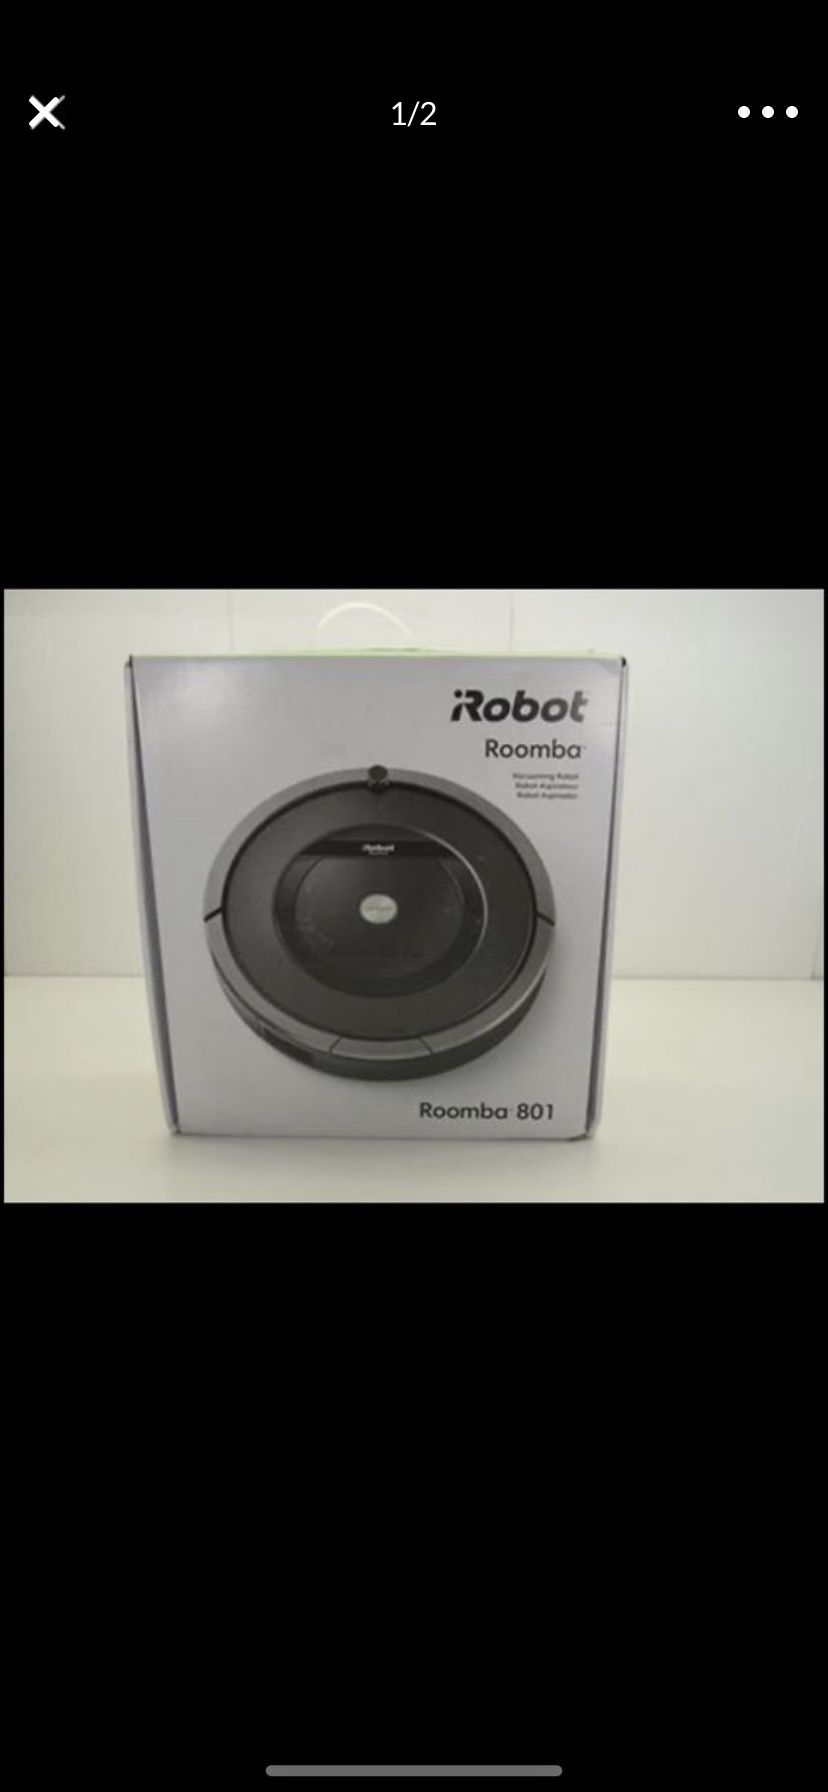 iRobot roomba 801 robot vacuum